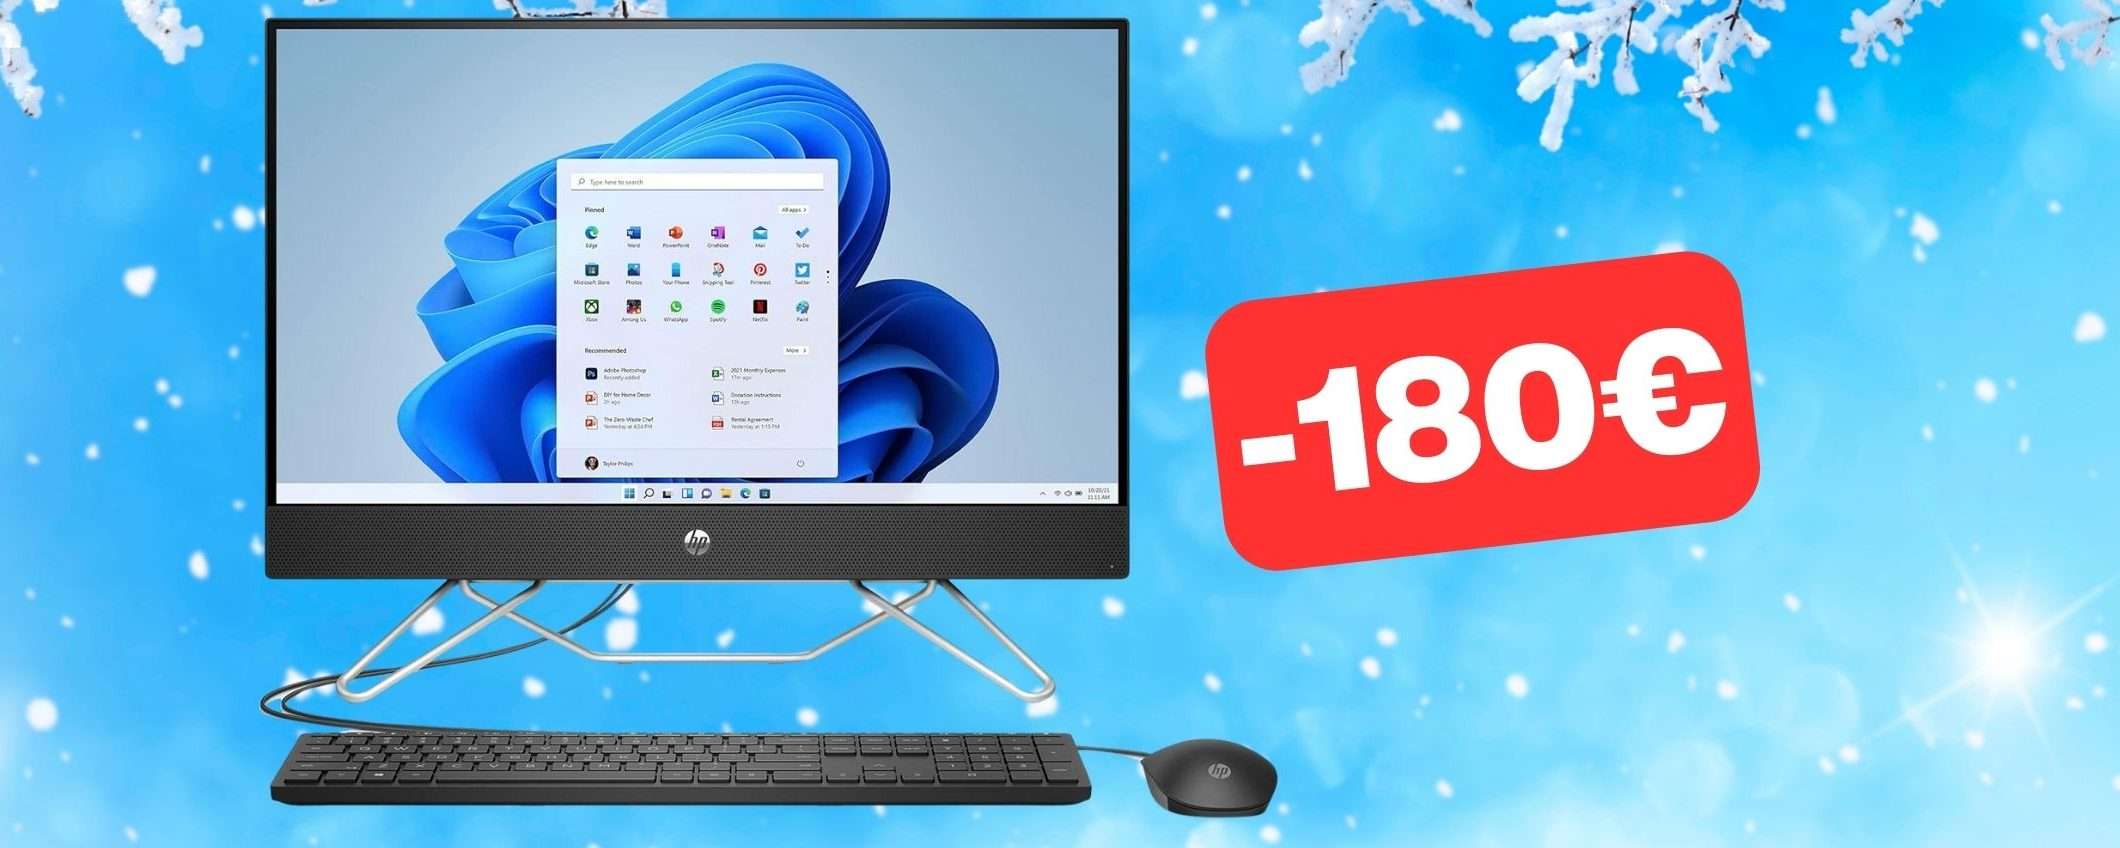 PC HP All-in-One (512GB SSD, 8GB RAM e W11) in offerta al MINIMO (-180€)